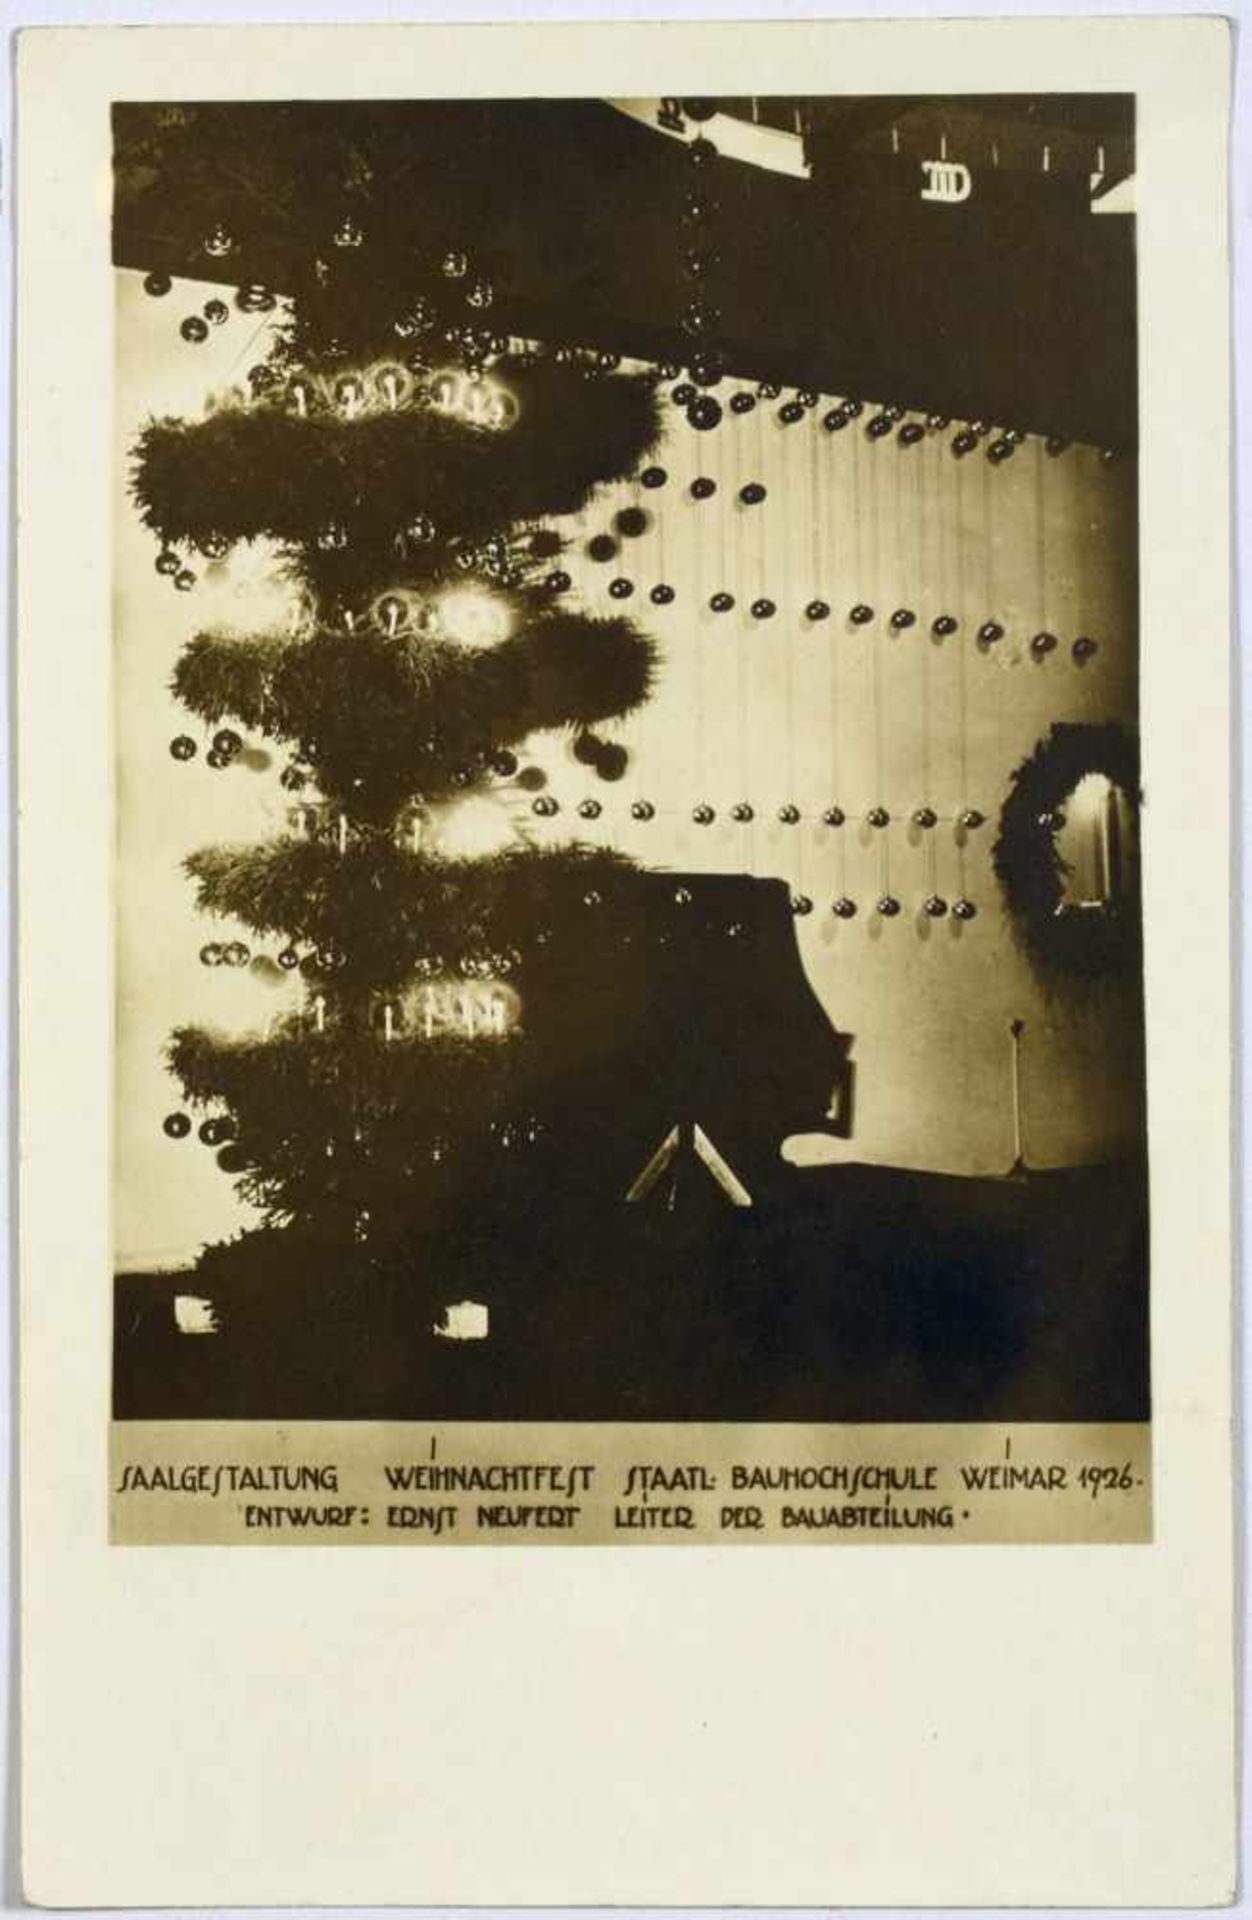 Bauhaus - Saalgestaltung Weihnachtsfest Staatl. Bauhochschule Weimar 1926. Drei Originalfotografien.